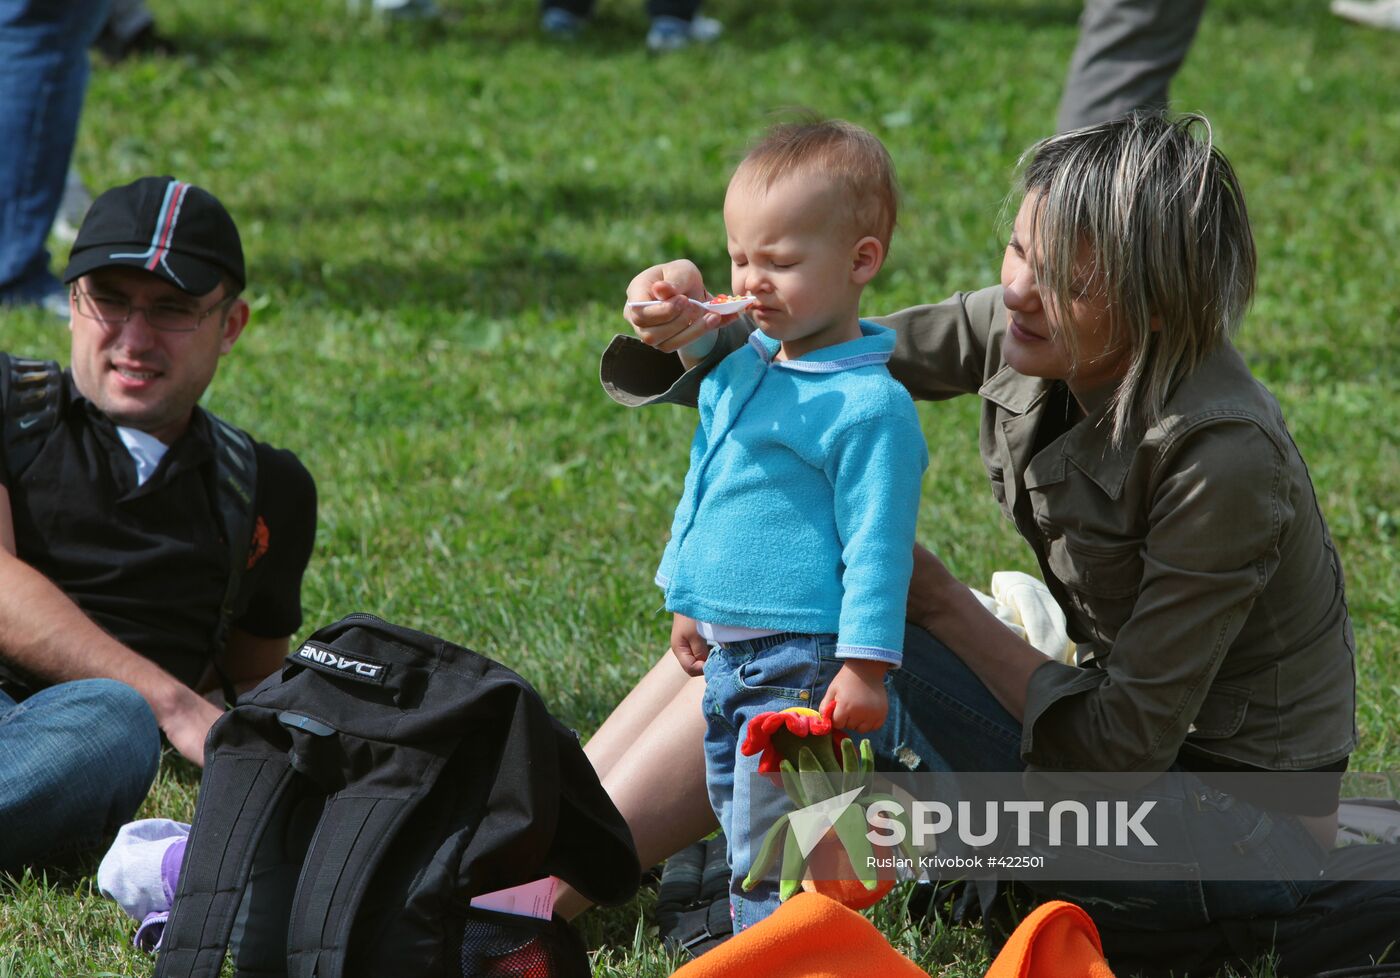 Kolomenskoye Park hosts Afisha Picnic Festival